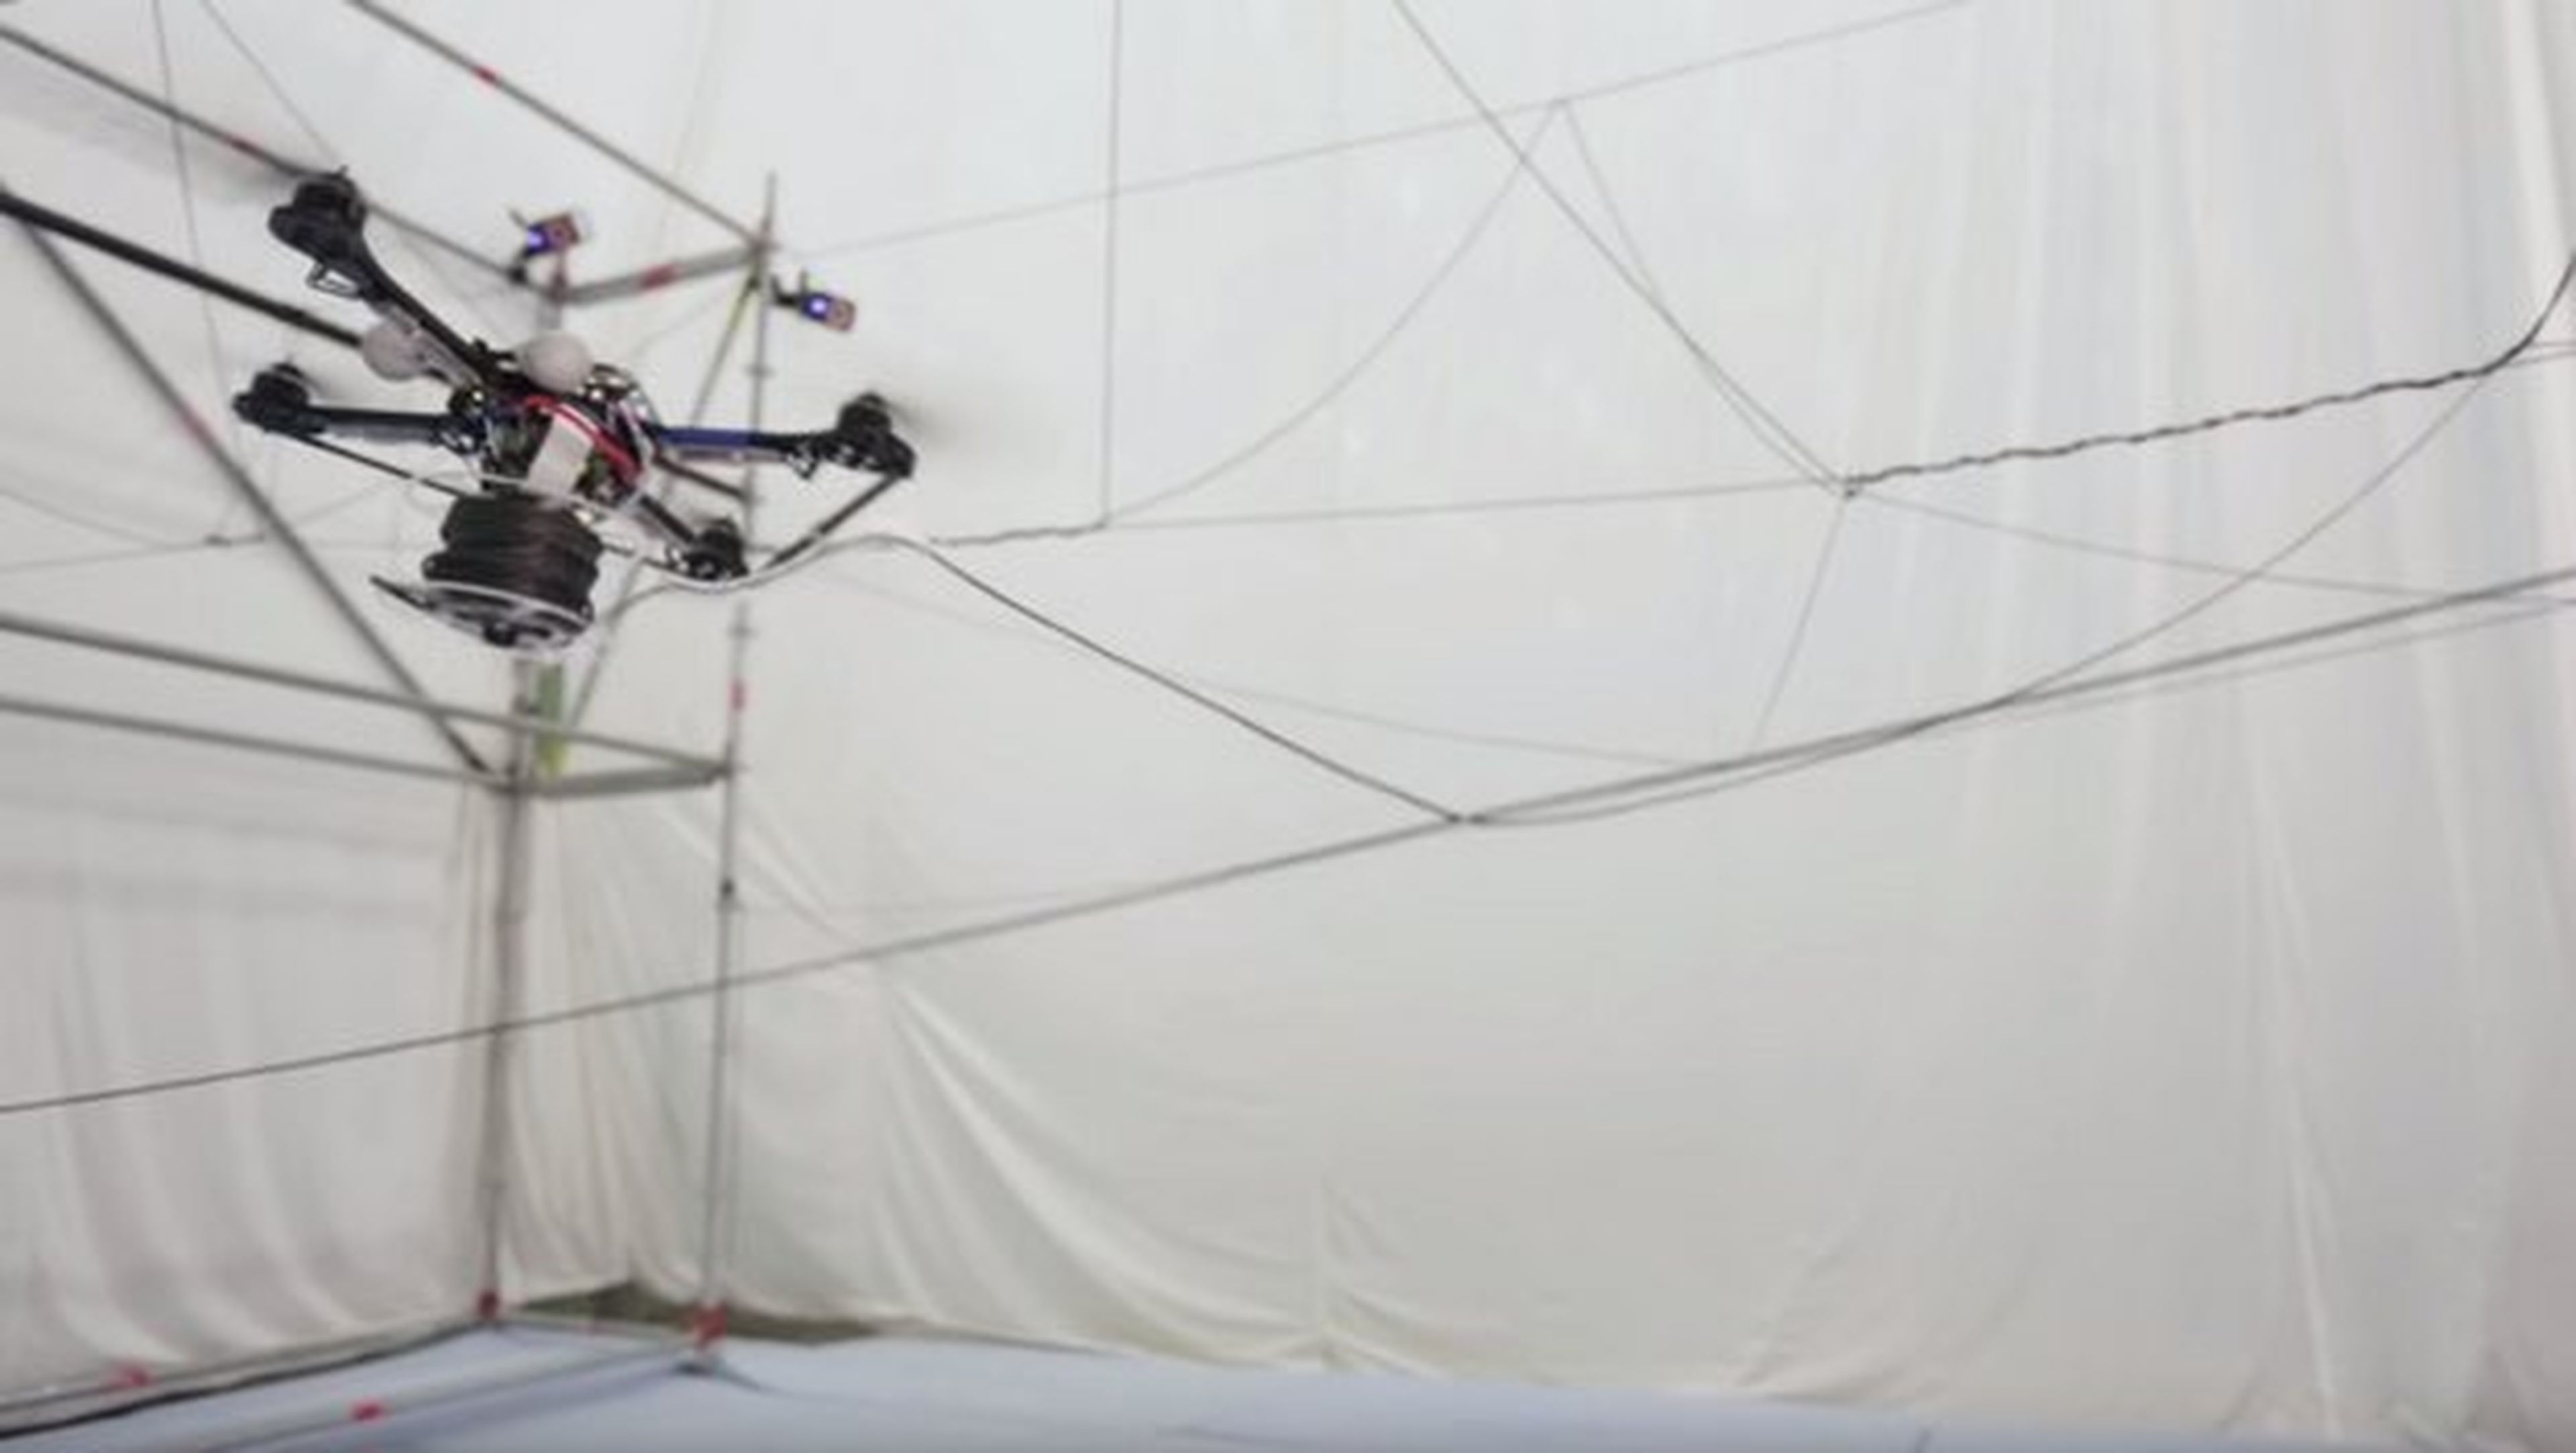 Unos drones construyen un puente de cuerdas en el aire (vídeo)